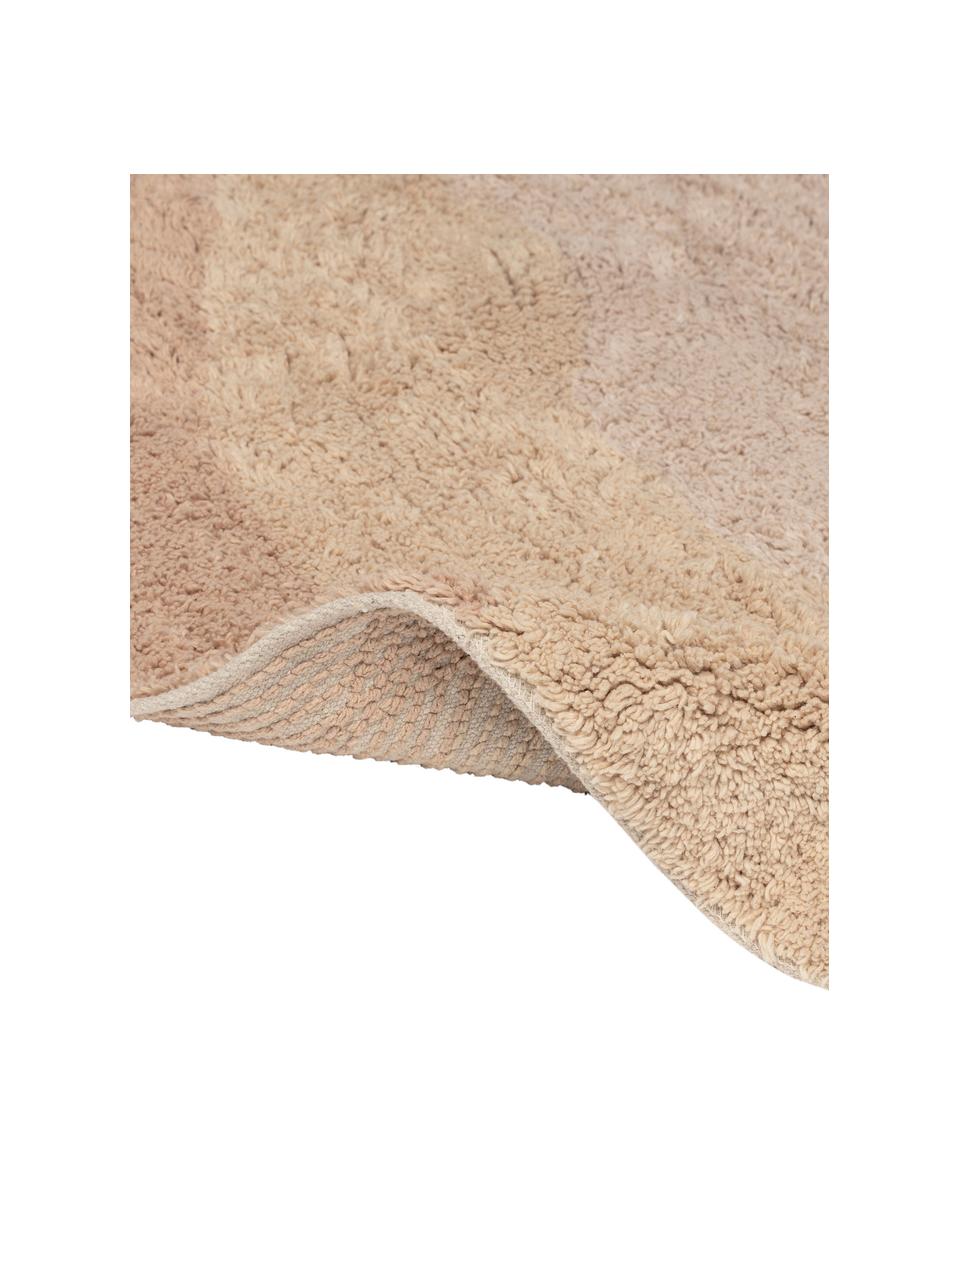 Ovaler Baumwollteppich Malva in Beige-Tönen, gemustert, 100% Baumwolle, Beigetöne, B 90 x L 150 cm (Größe M)